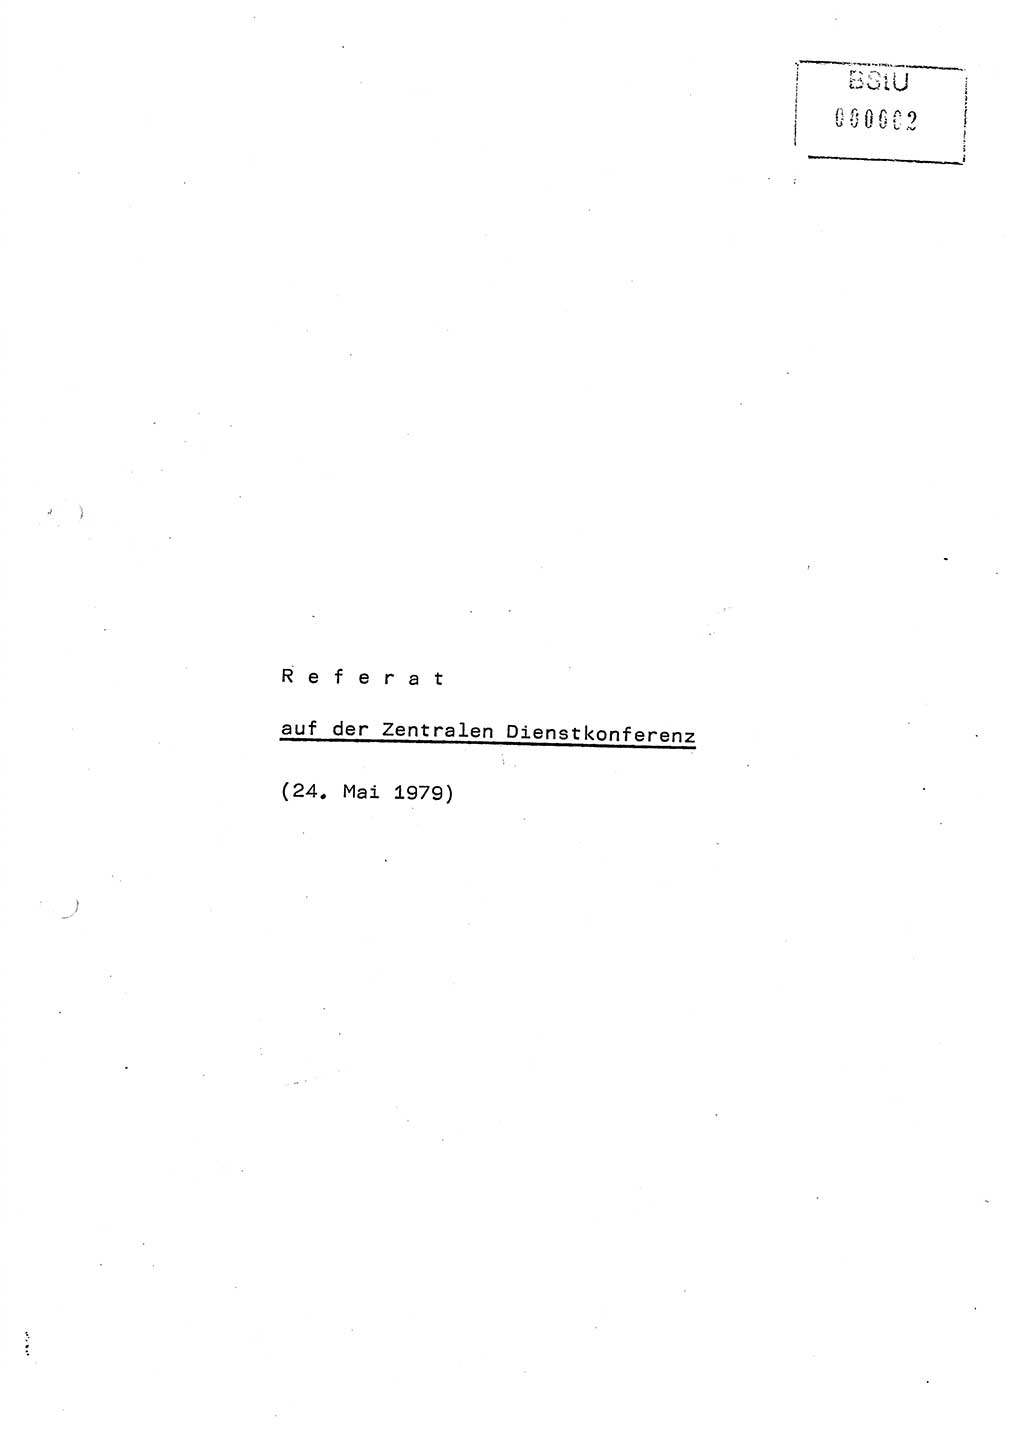 Referat (Generaloberst Erich Mielke) auf der Zentralen Dienstkonferenz am 24.5.1979 [Ministerium für Staatssicherheit (MfS), Deutsche Demokratische Republik (DDR), Der Minister], Berlin 1979, Seite 1 (Ref. DK DDR MfS Min. /79 1979, S. 1)